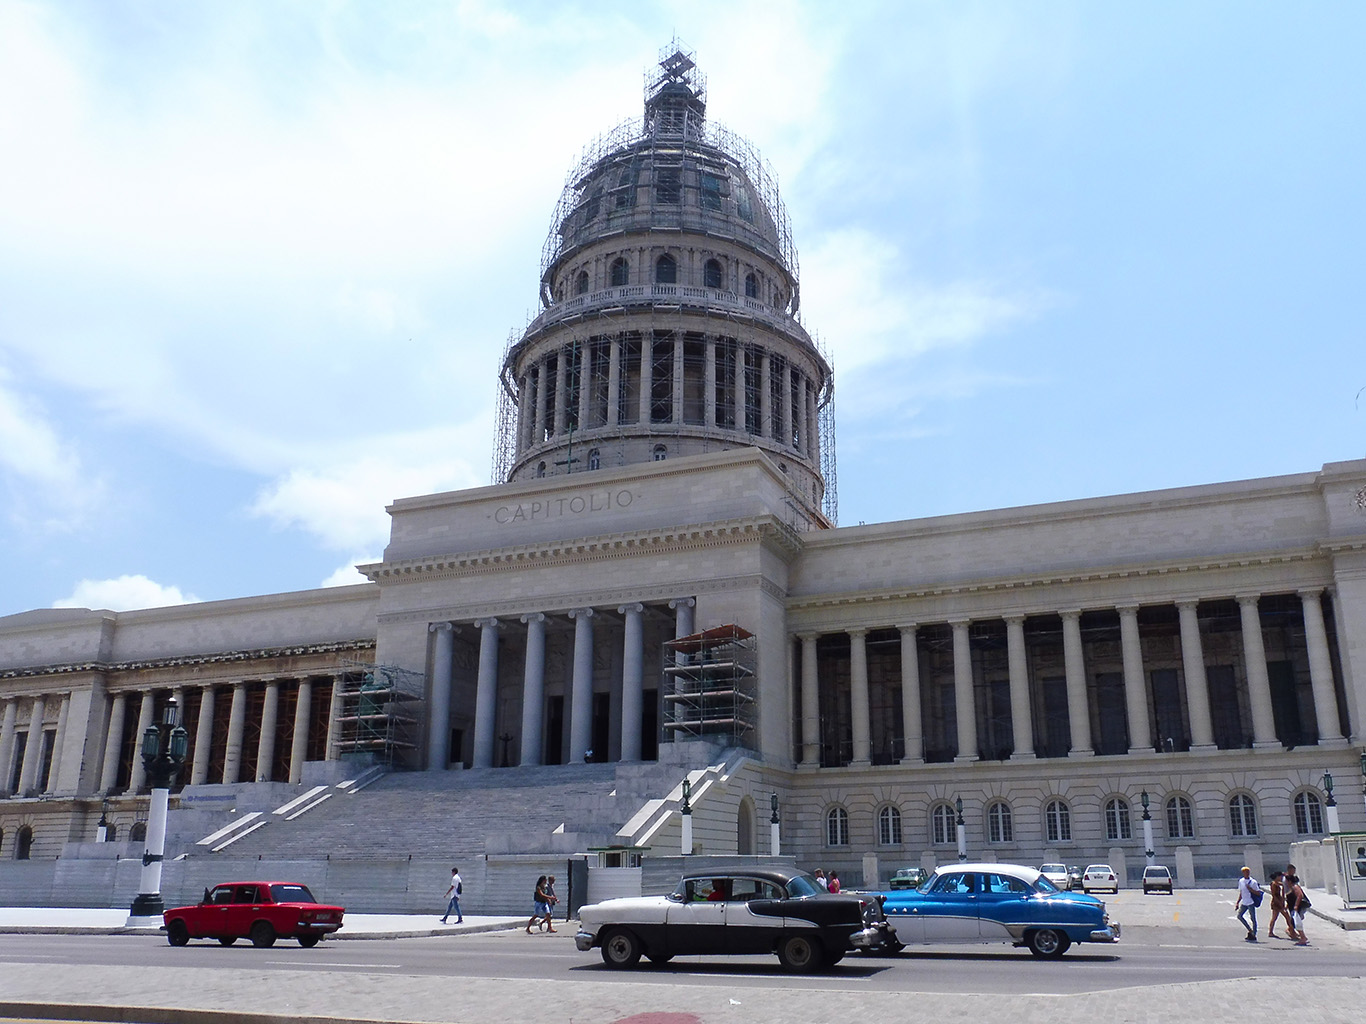 Havanský Kapitol se nápadně podobná Kapitolu ve Washingtonu